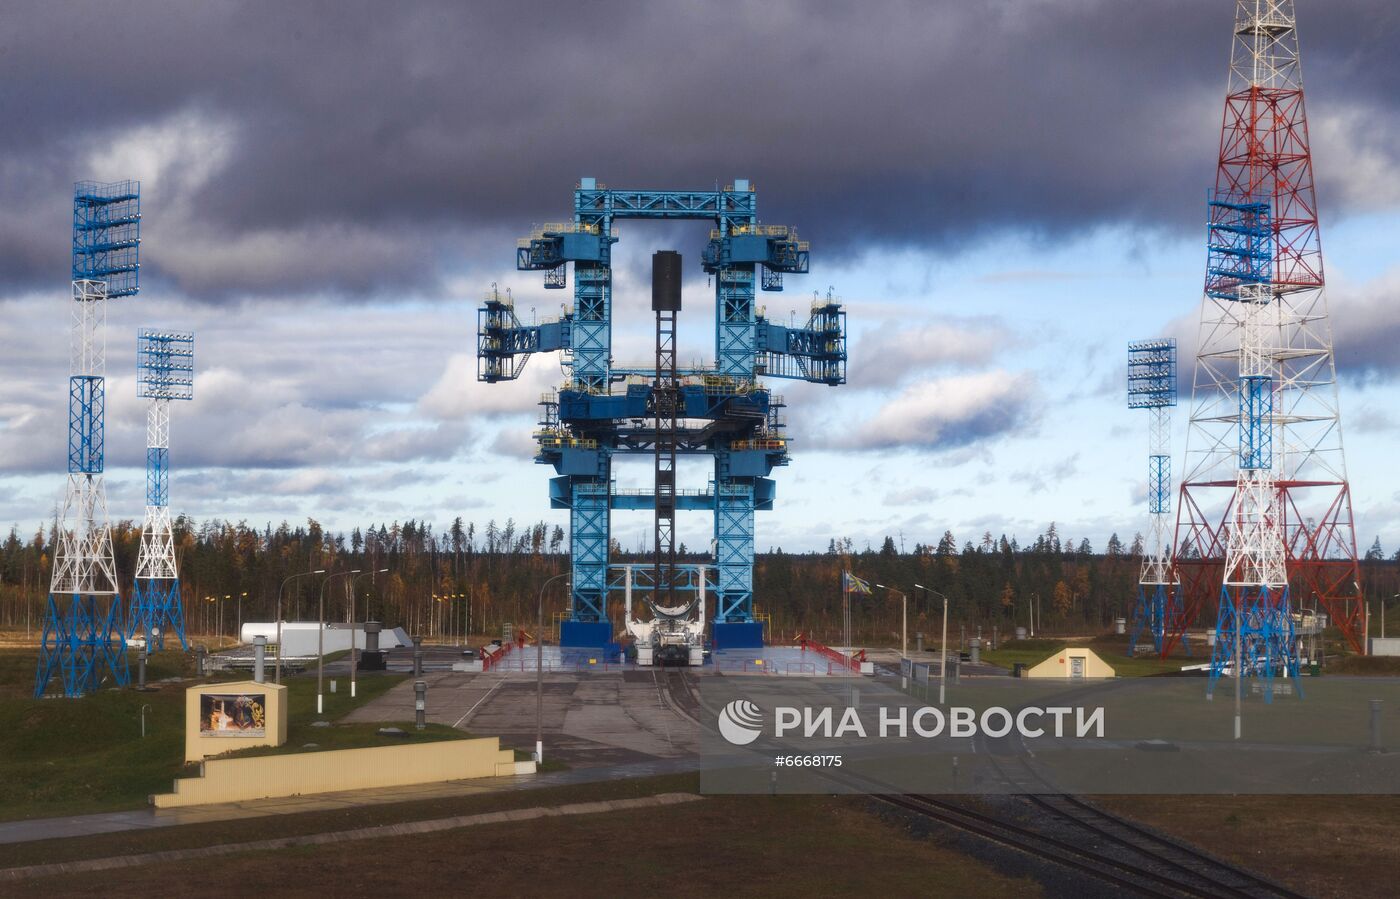 Глава минобороны РФ С. Шойгу прибыл на космодром Плесецк